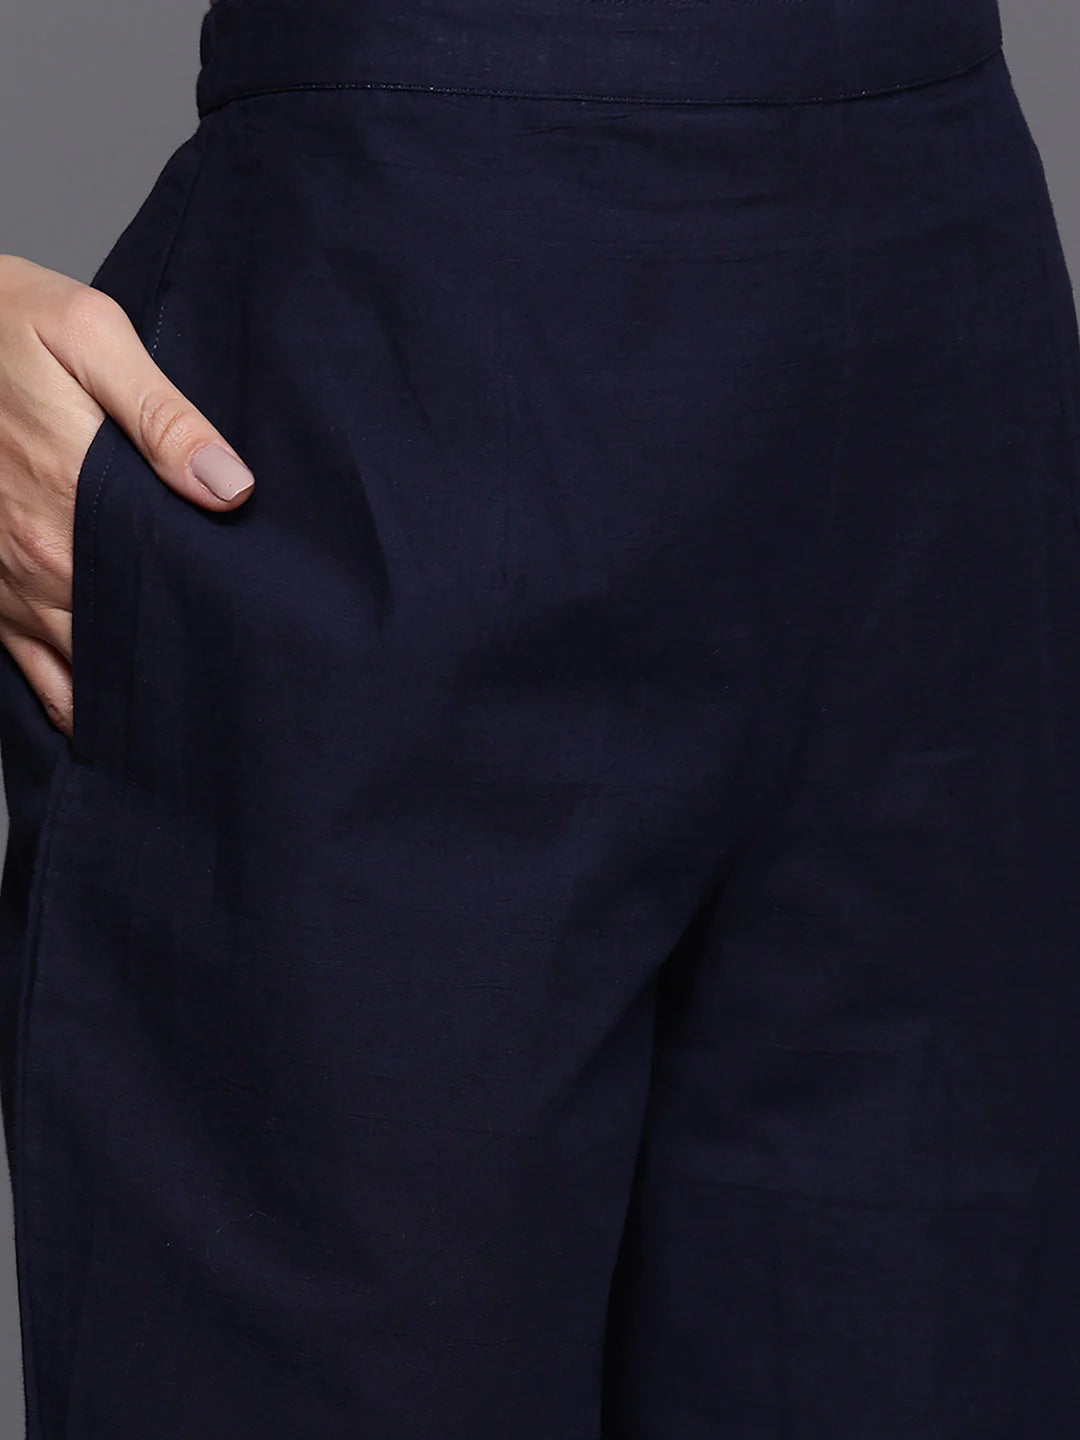 Women's Navy Blue Foil Printed A-Line Kurta Trouser With Dupatta Set - Navyaa